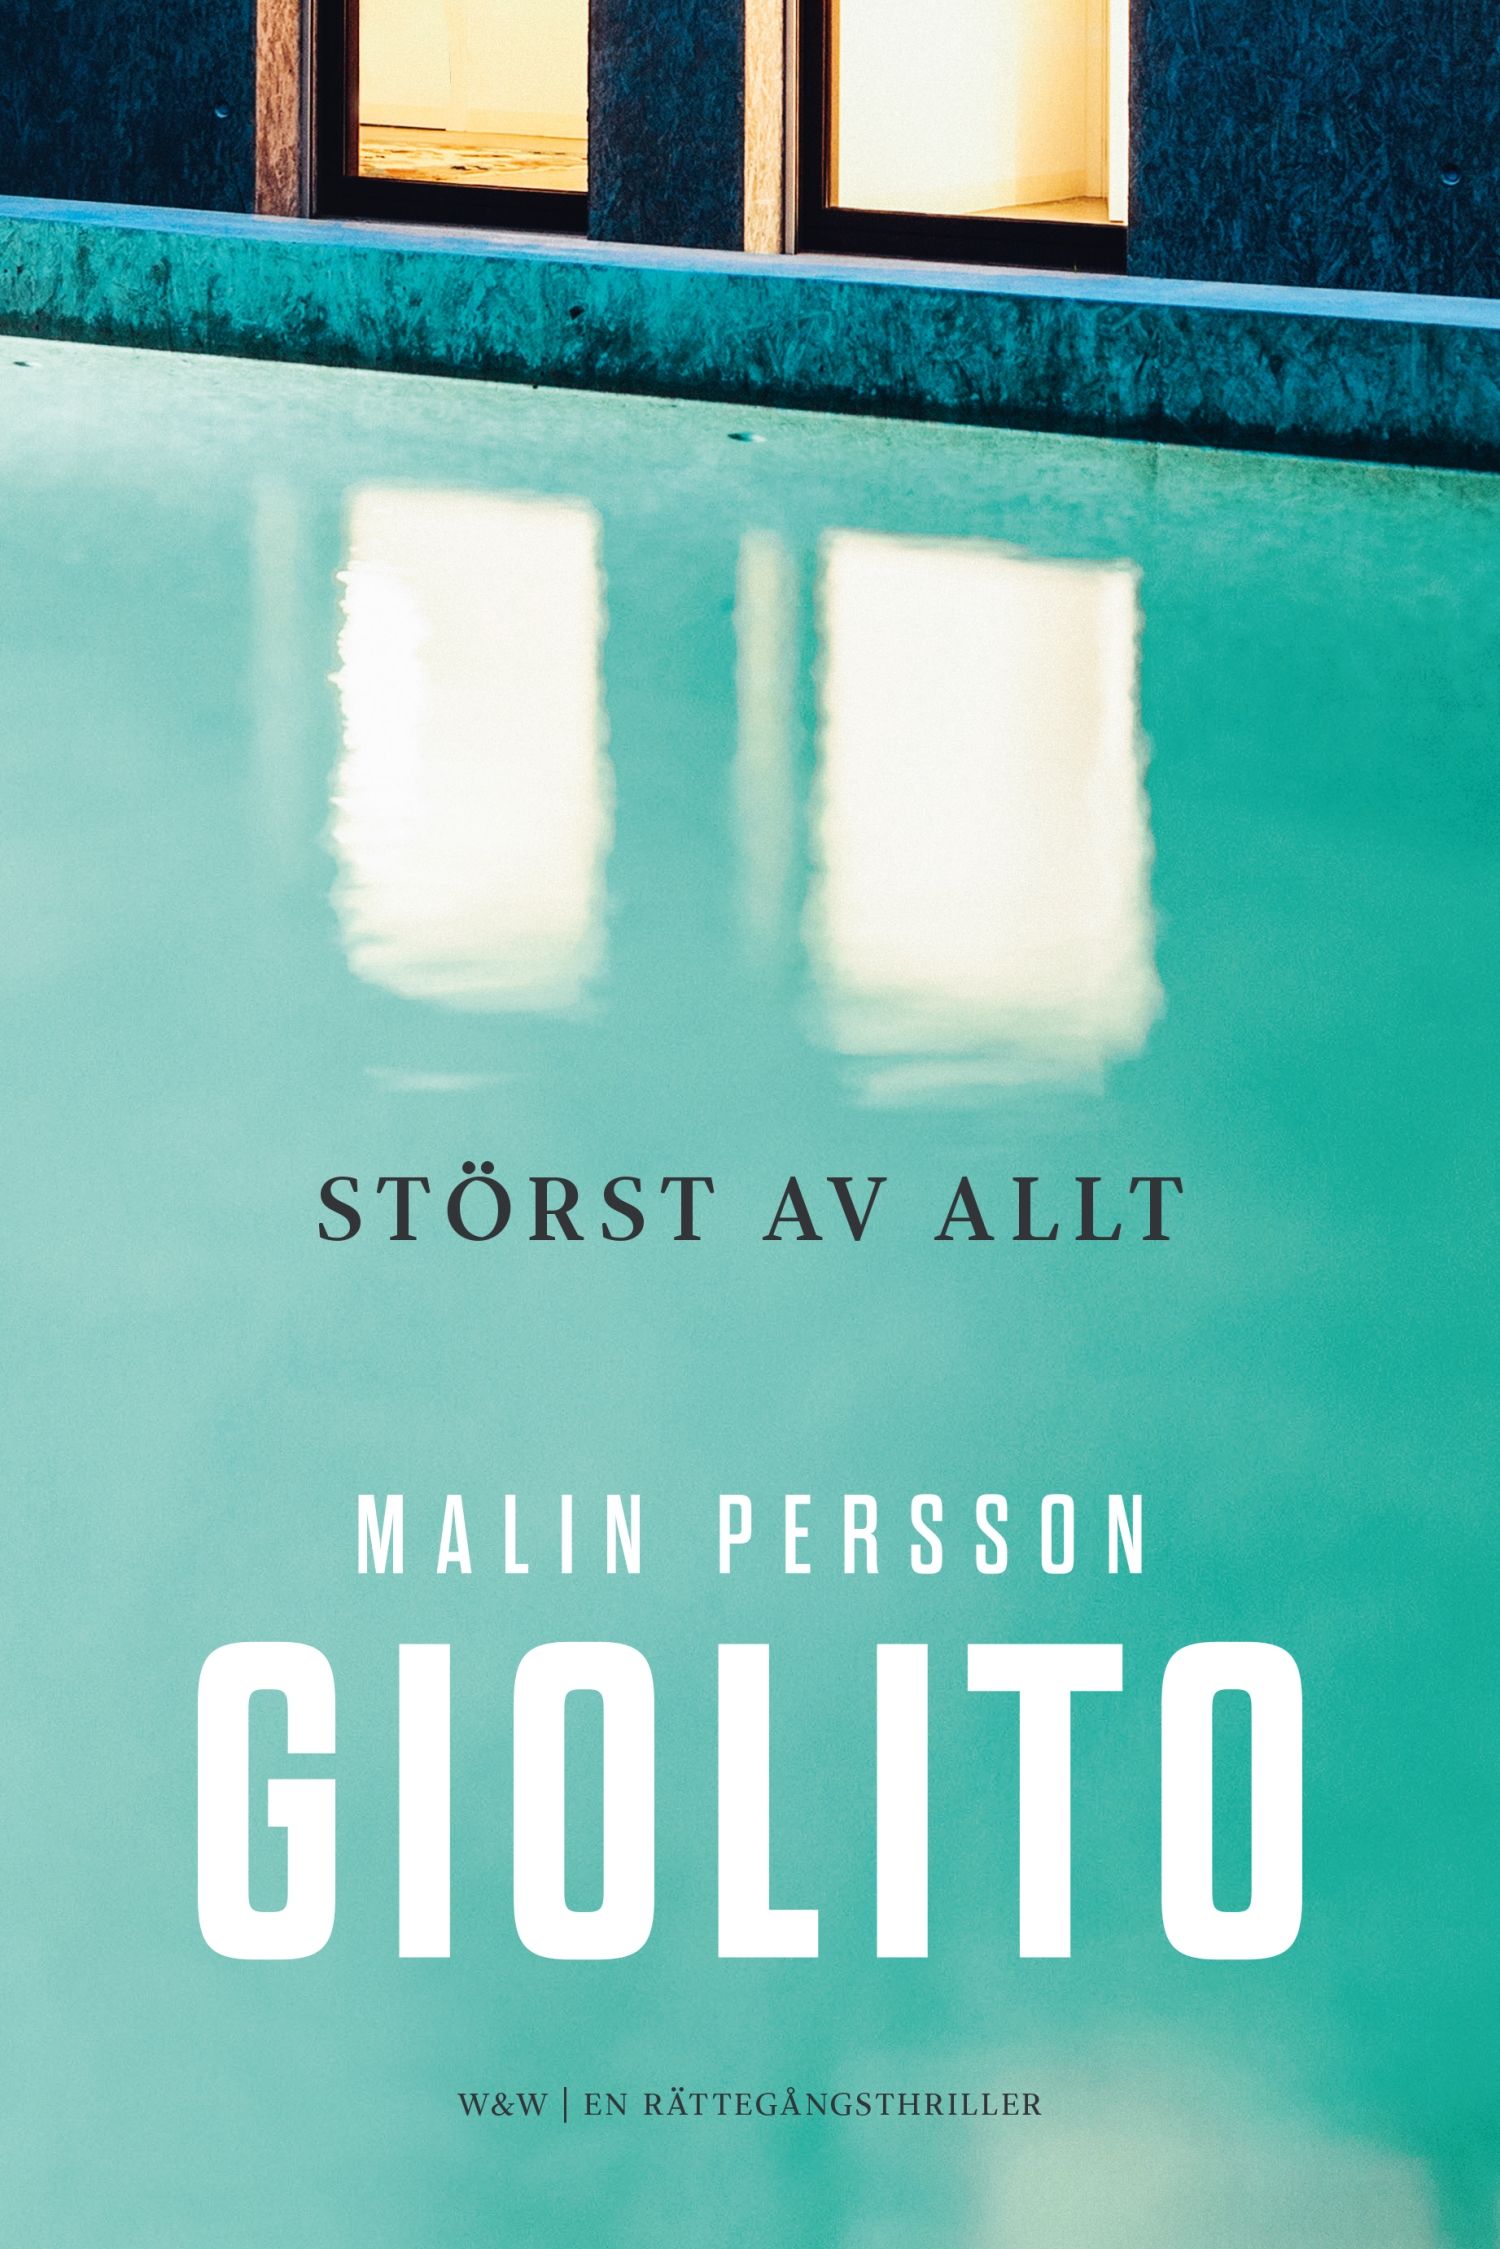 Störst av allt, eBook by Malin Persson Giolito